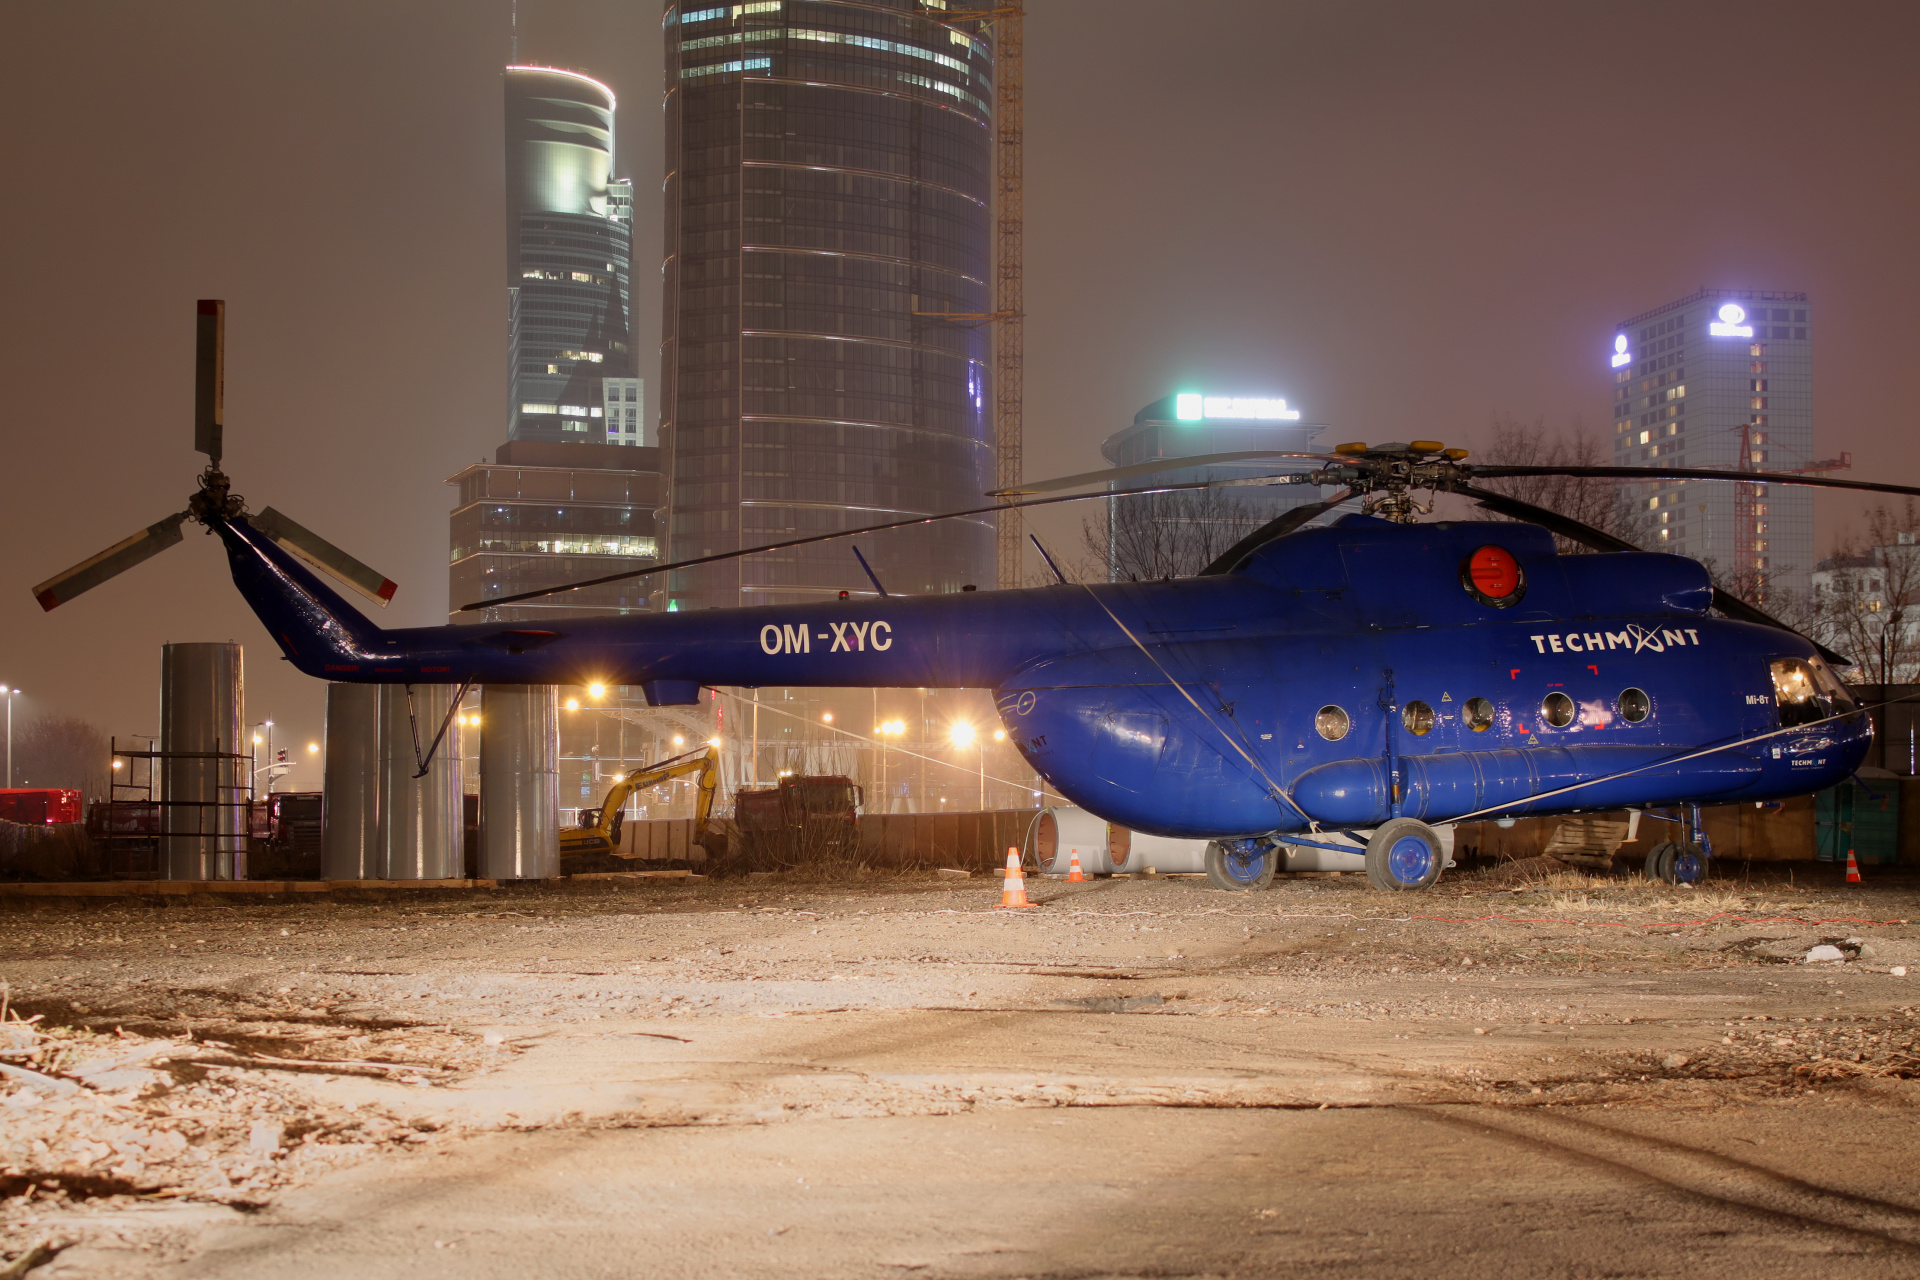 Mil Mi-8T, OM-XYC, Techmont (Samoloty)